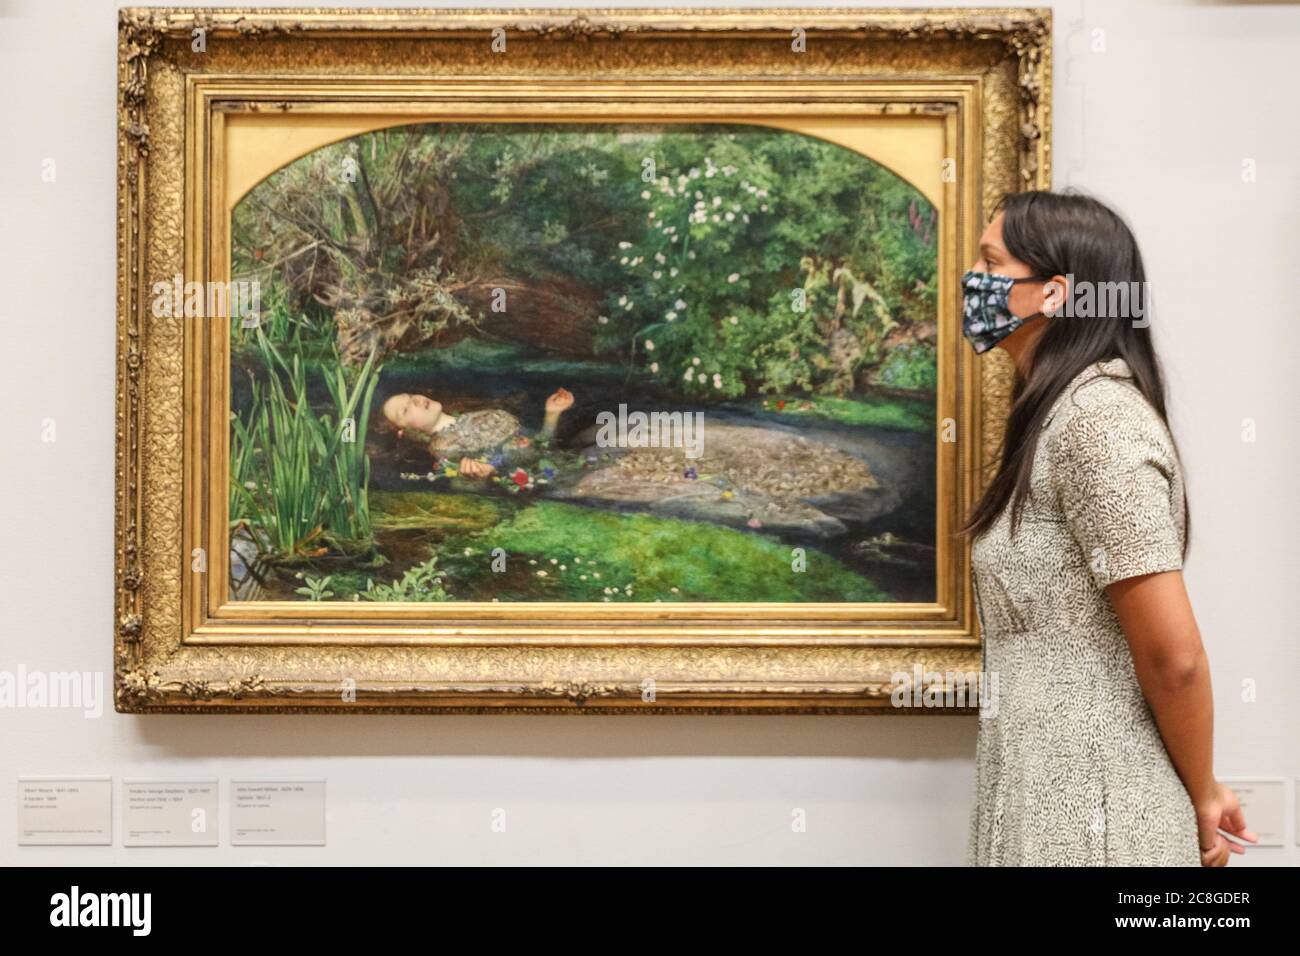 Londres, Royaume-Uni. 24 juillet 2020. Un assistant regarde la célèbre « Ophelia » de John Everett Millais. Tate Britain, avec d'autres Tate Galleries dans le pays, rouvrira aux visiteurs lundi 27 juillet avec des mesures sociales de distanciation en place. Crédit : Imagetraceur/Alamy Live News Banque D'Images